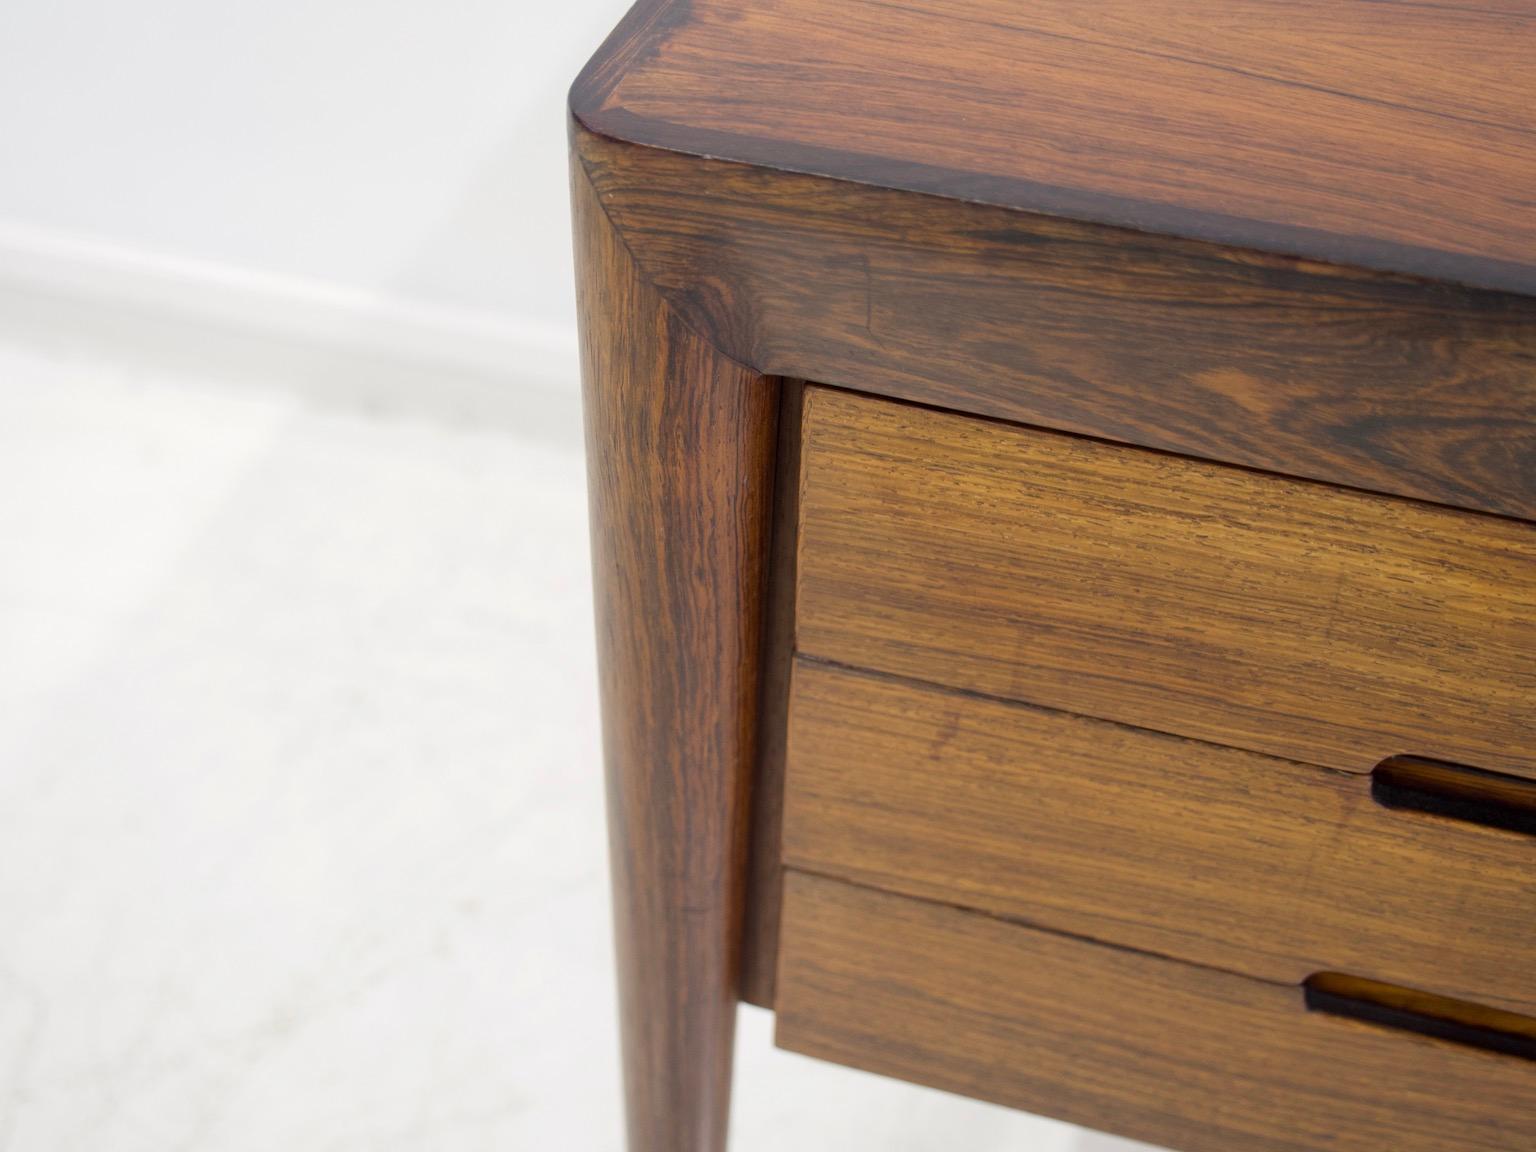 Hardwood Minimalist Wooden Desk with Raised Edge by Erik Riisager Hansen